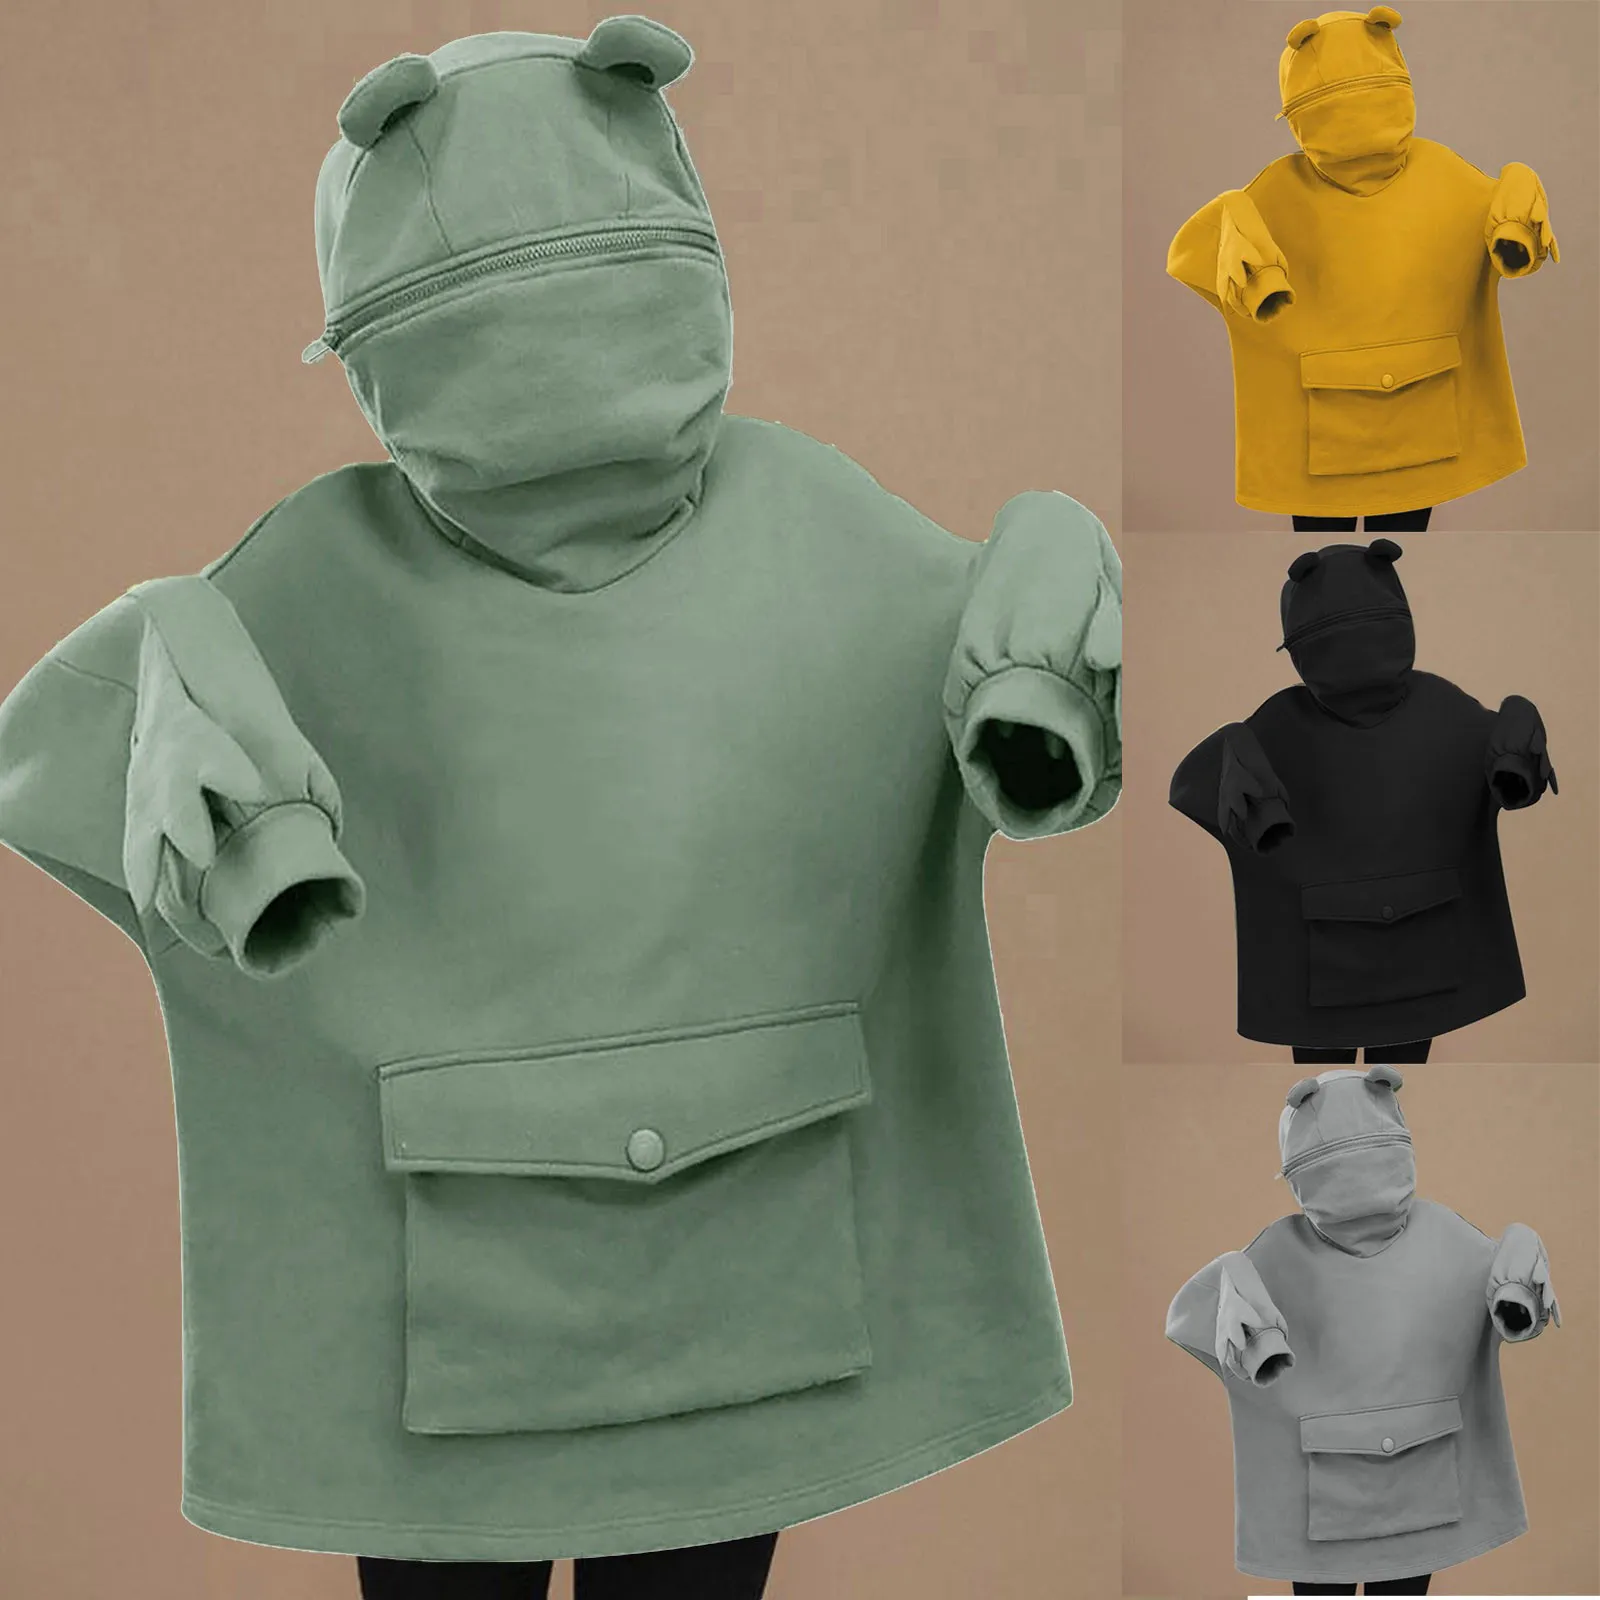 

Plus Velvet Sweatshirt Women Hoodies Sweet Japan Top Creative Stitching Three-dimensional Cute Frogs Pullover Pocket Hoodies #Q